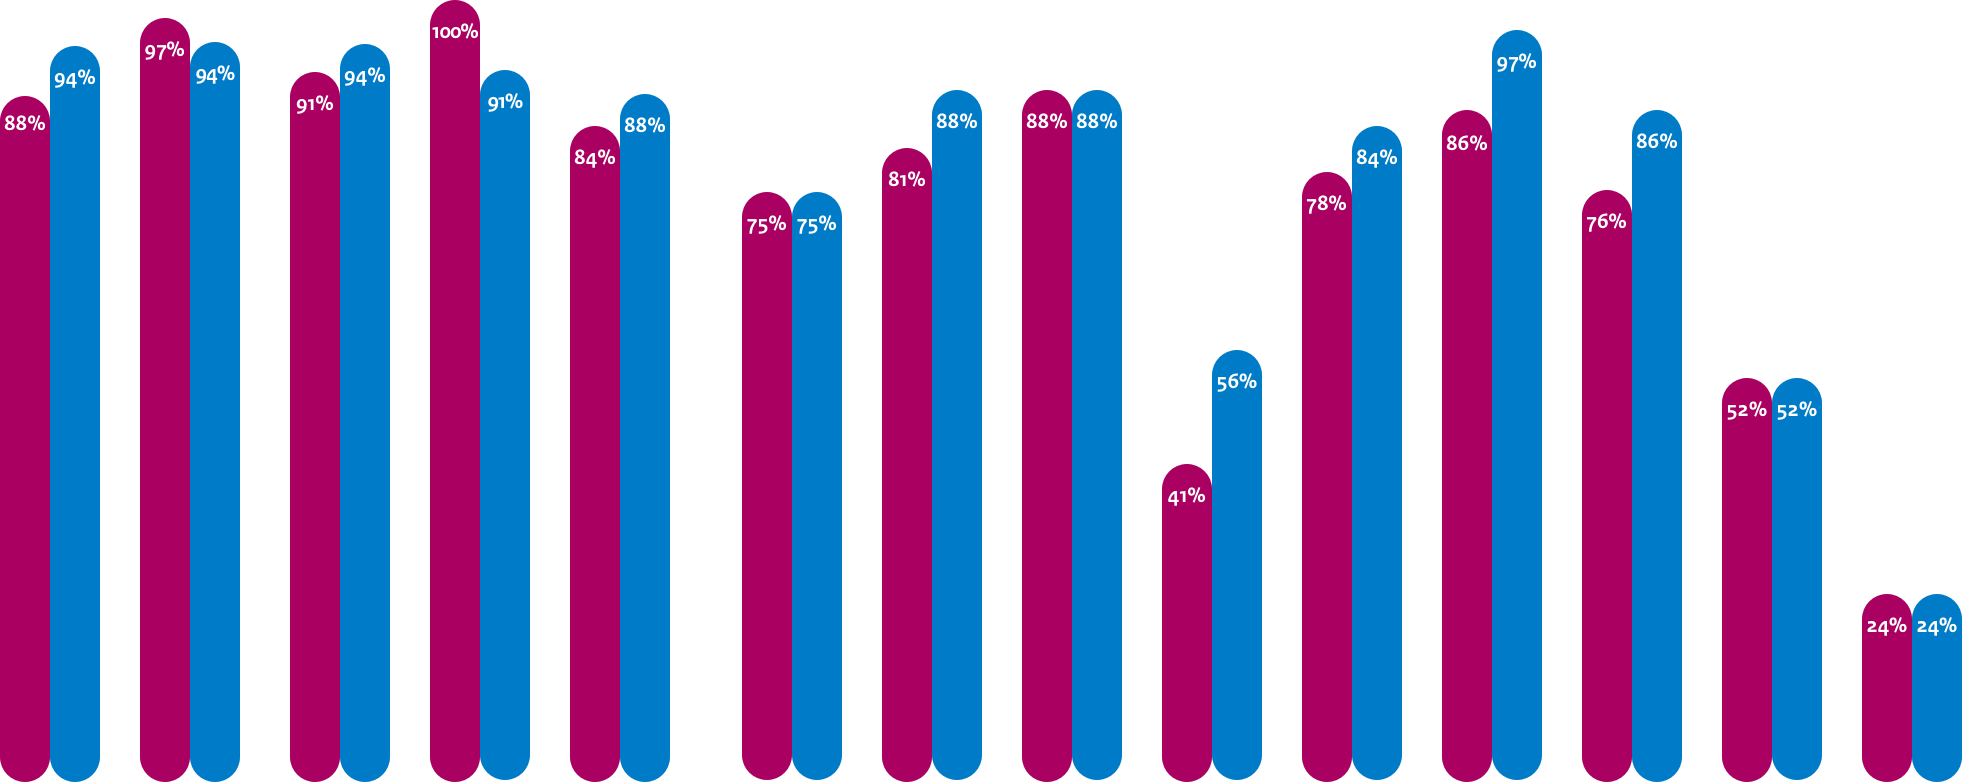 Gemiddelde adoptie webstandaarden Waterschappen
DNSSEC: 88%, 94%
TLS: 97%, 94%
TLS NCSC: 91%, 94%
HTTPS: 100%, 91%
HSTS: 84%, 88%

Gemiddelde adoptie mailstandaarden Anti-phishing Waterschappen
DMARC: 75%, 75%
DKIM: 81%, 88%
SPF: 88%, 88%
DMARC Policy: 41%, 56%
SPF Policy: 78%, 84%

Gemiddelde adoptie mailstandaarden Vertrouwelijkheid Waterschappen
START TLS: 86%, 97%
START TLS NCSC: 76%, 86%
DNSSEC MX: 52%, 52%
DANE: 24%, 24%